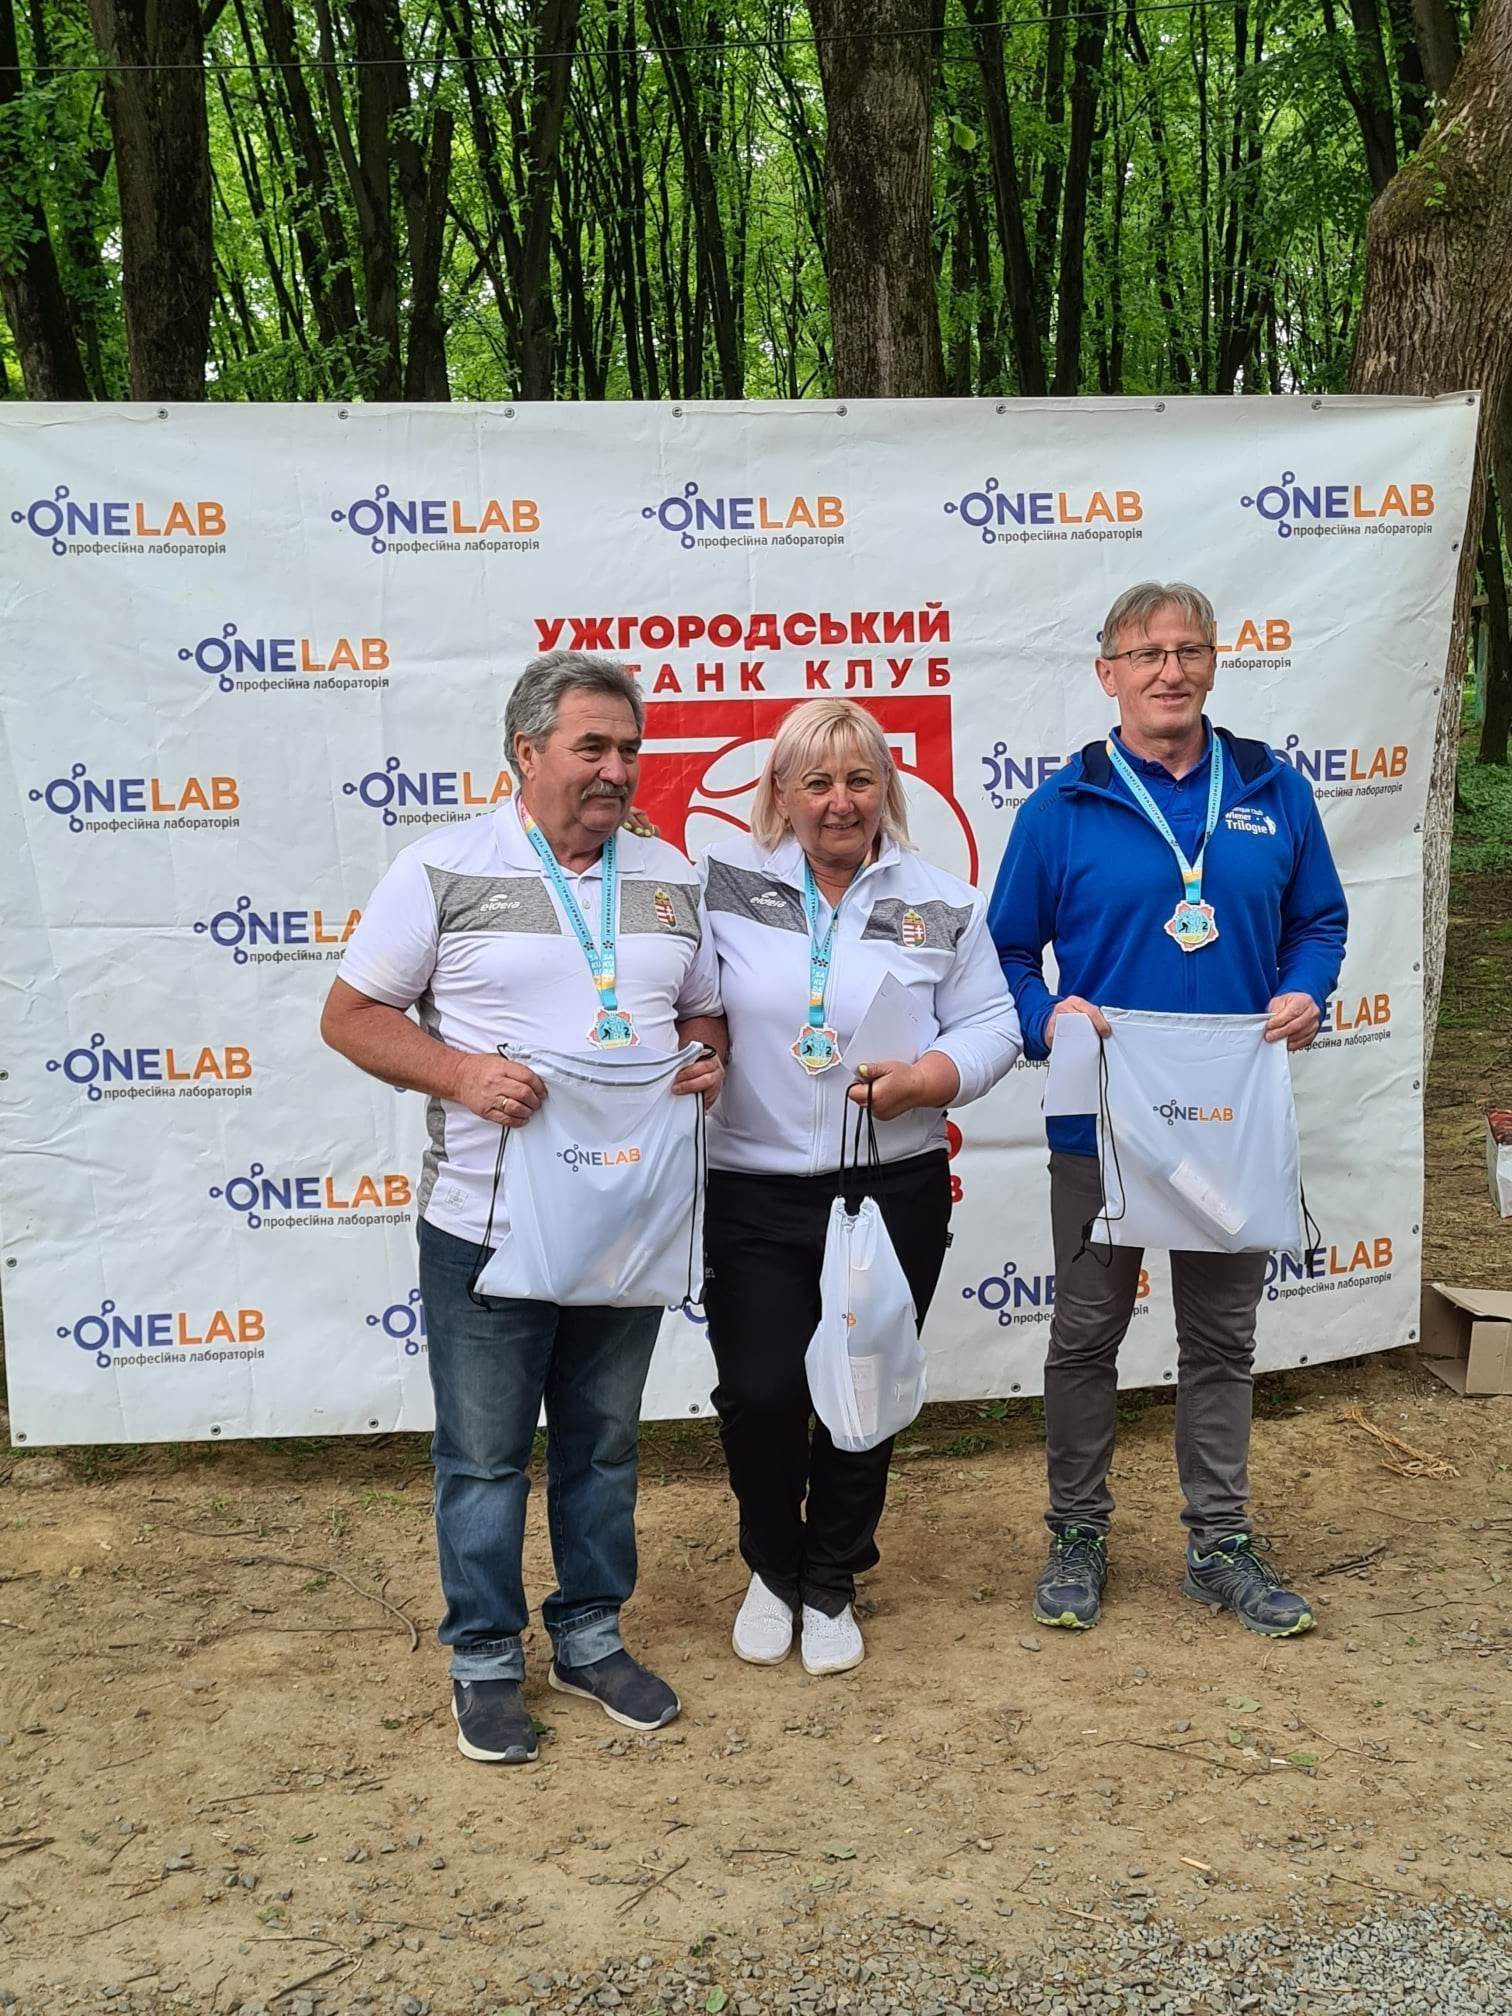 Szigetszentmiklósi tagokkal lett második a magyar petanque csapat